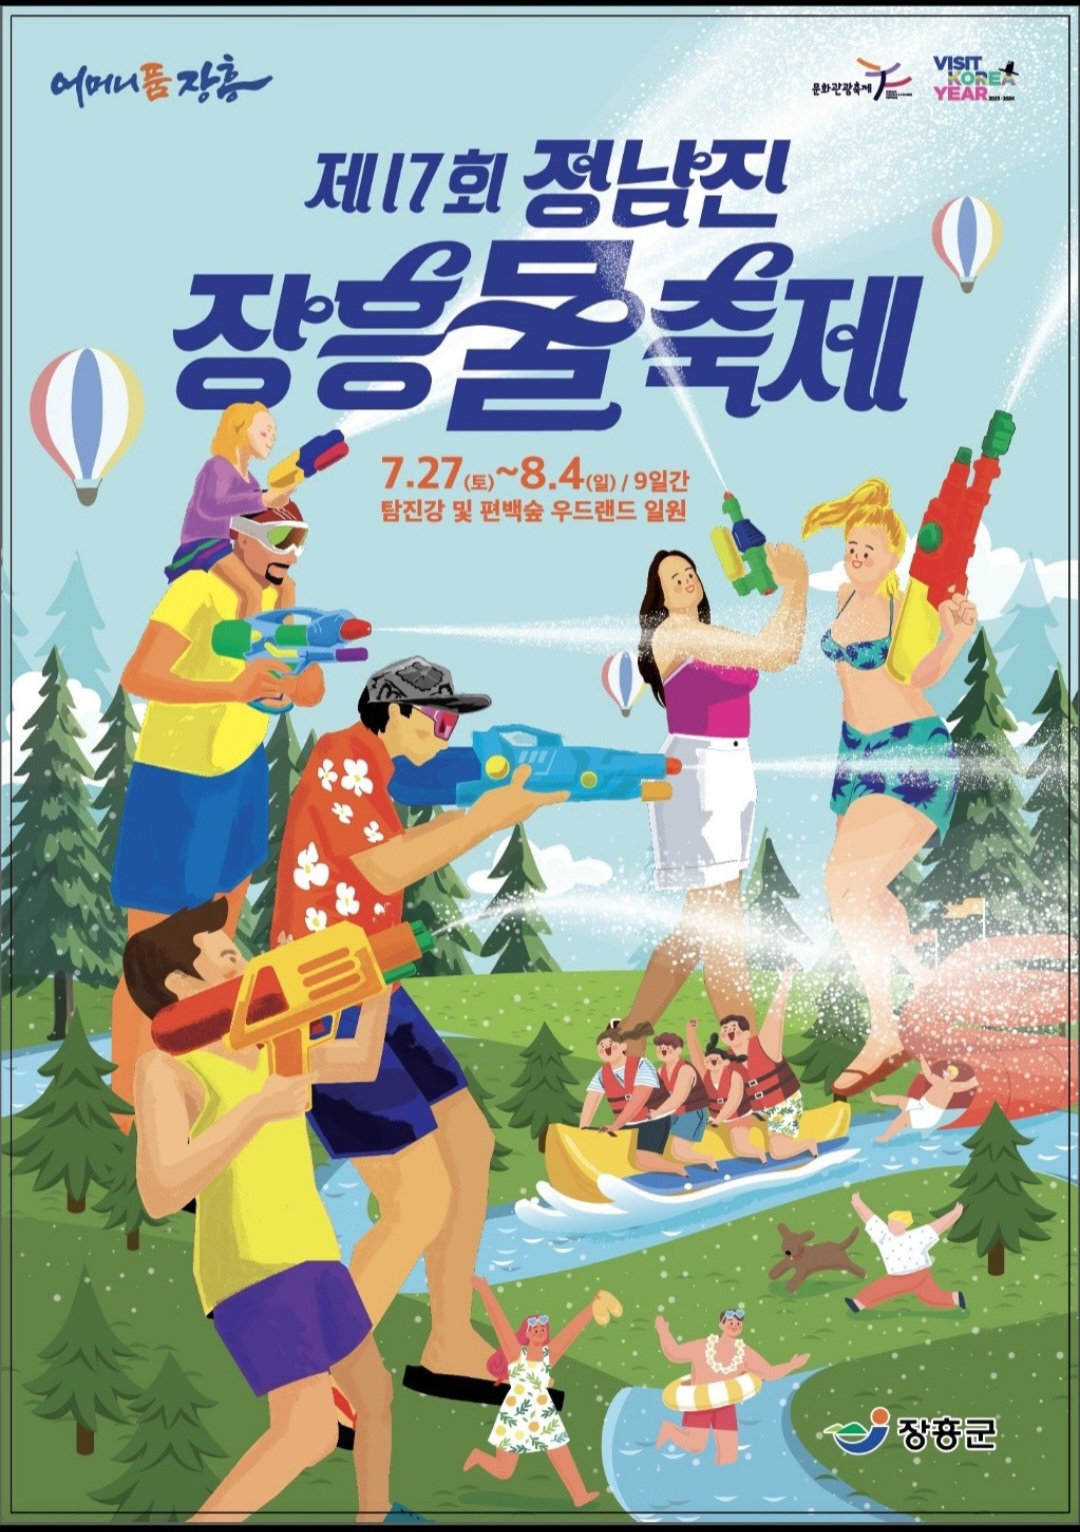 제17회 정남진장흥 물축제 홍보 이미지 1 - 본문에 자세한설명을 제공합니다.